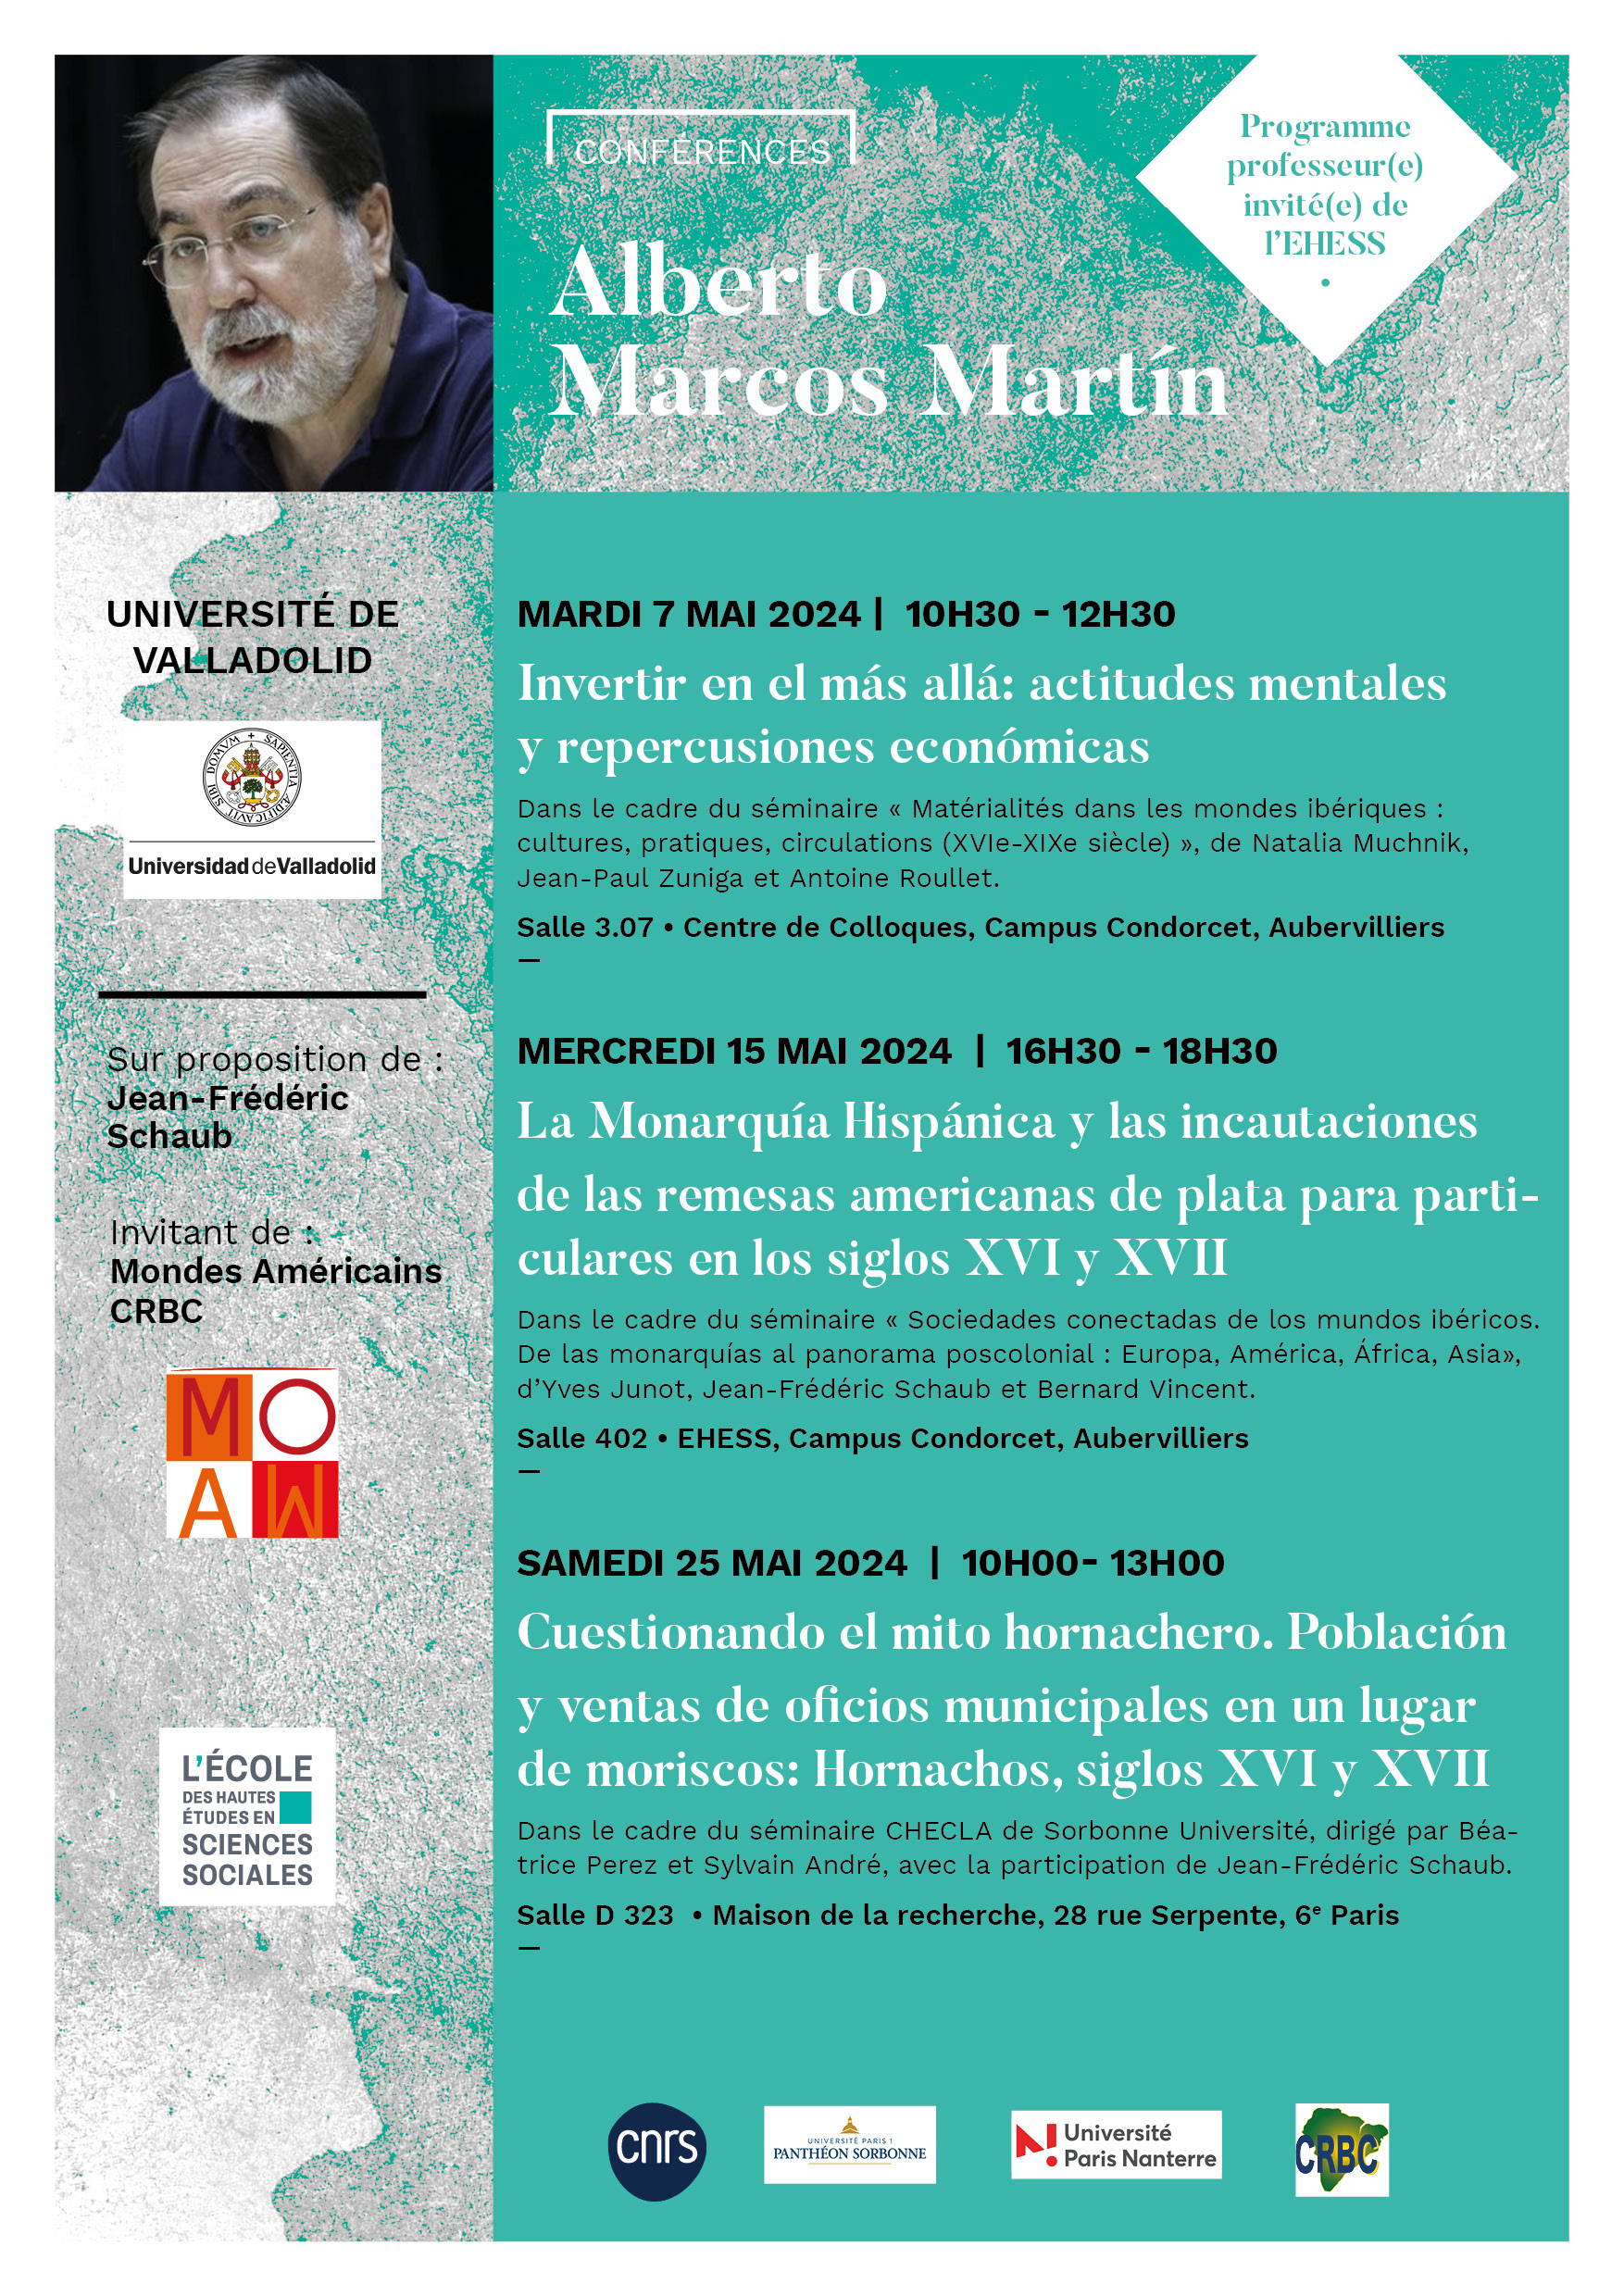 Conférences de Alberto Marcos Martín, professeur à l'université de Valladolid, Espagne